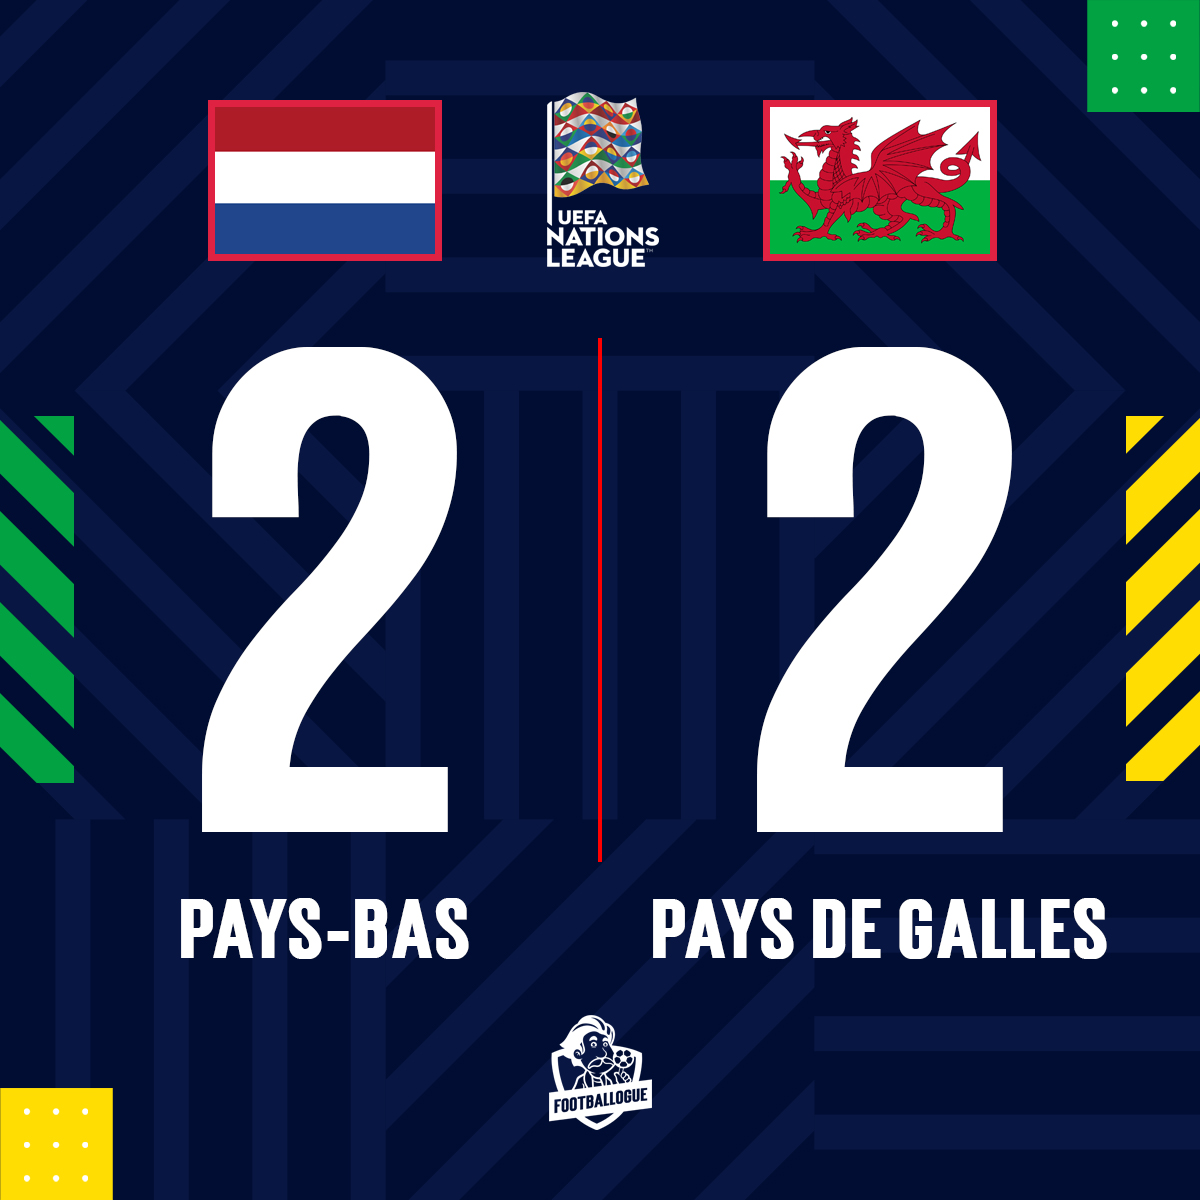 PAYS-BAS 🇳🇱 2-2 🏴󠁧󠁢󠁷󠁬󠁳󠁿 PAYS DE GALLES 

⚽ BUUUUUUUUUUUT DE BALE (sp) !

#NEDWAL